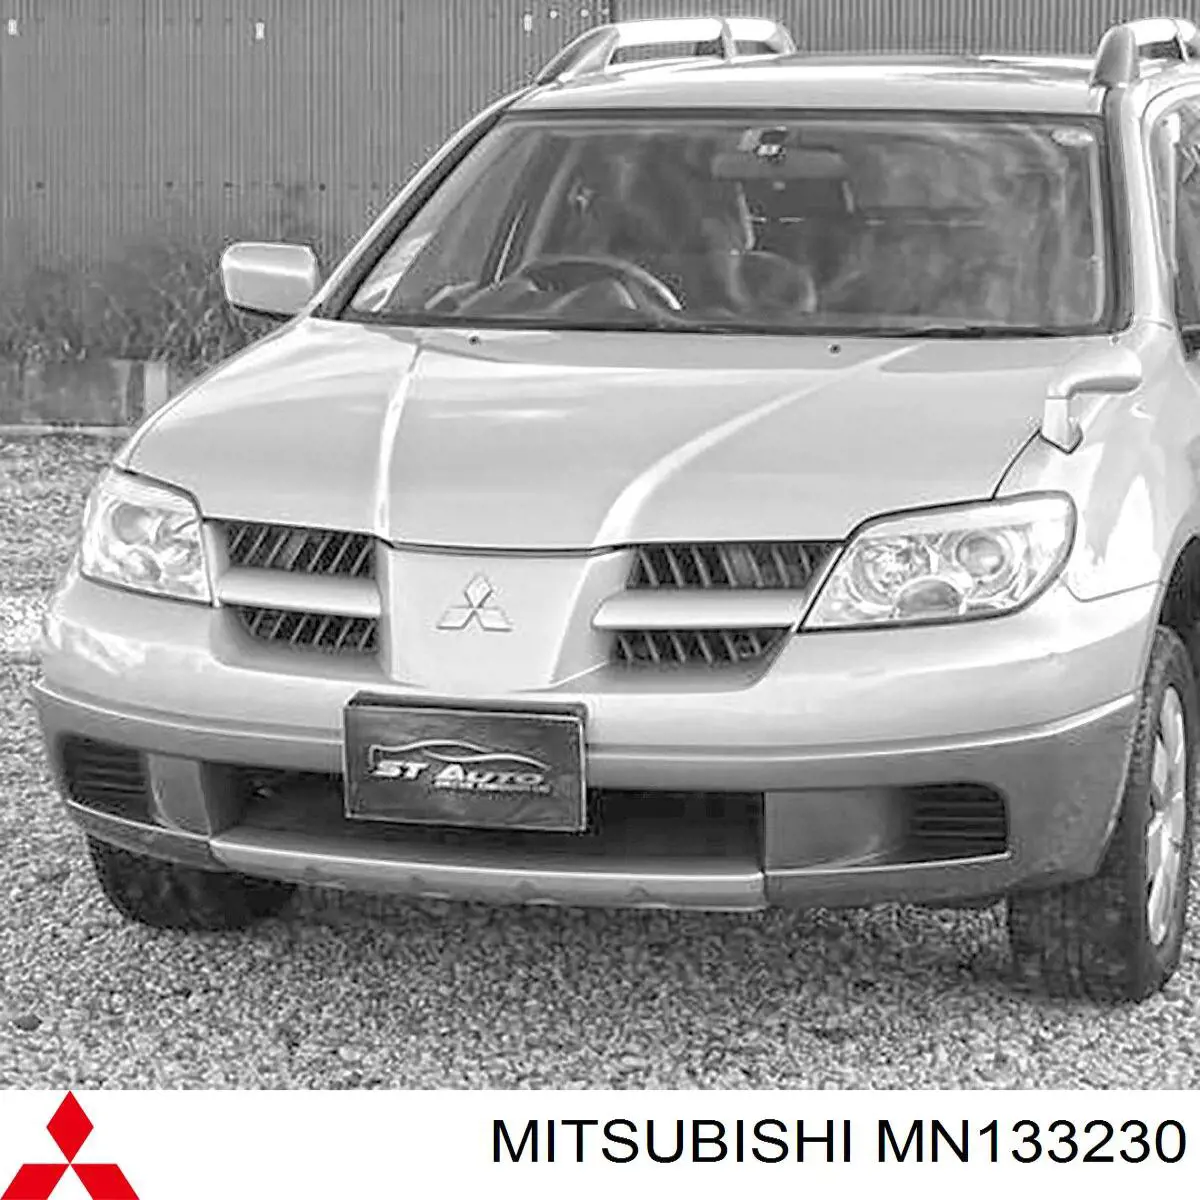 MN133230 Mitsubishi panal de radiador derecha